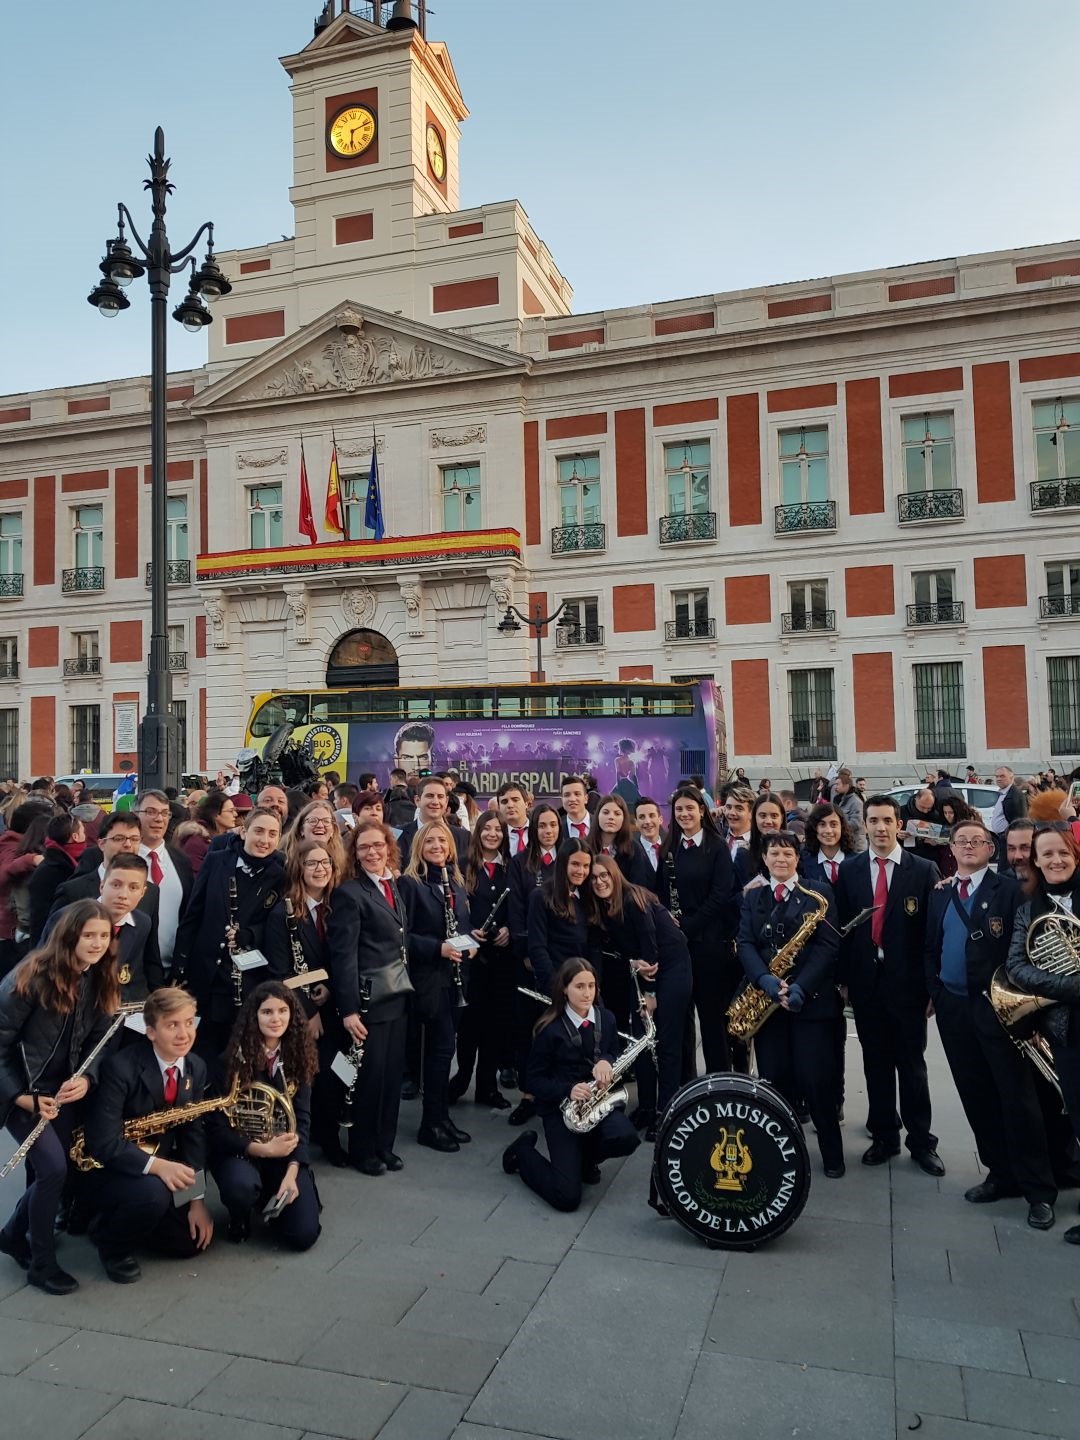 La Societat U.M. Polop de la Marina a Madrid